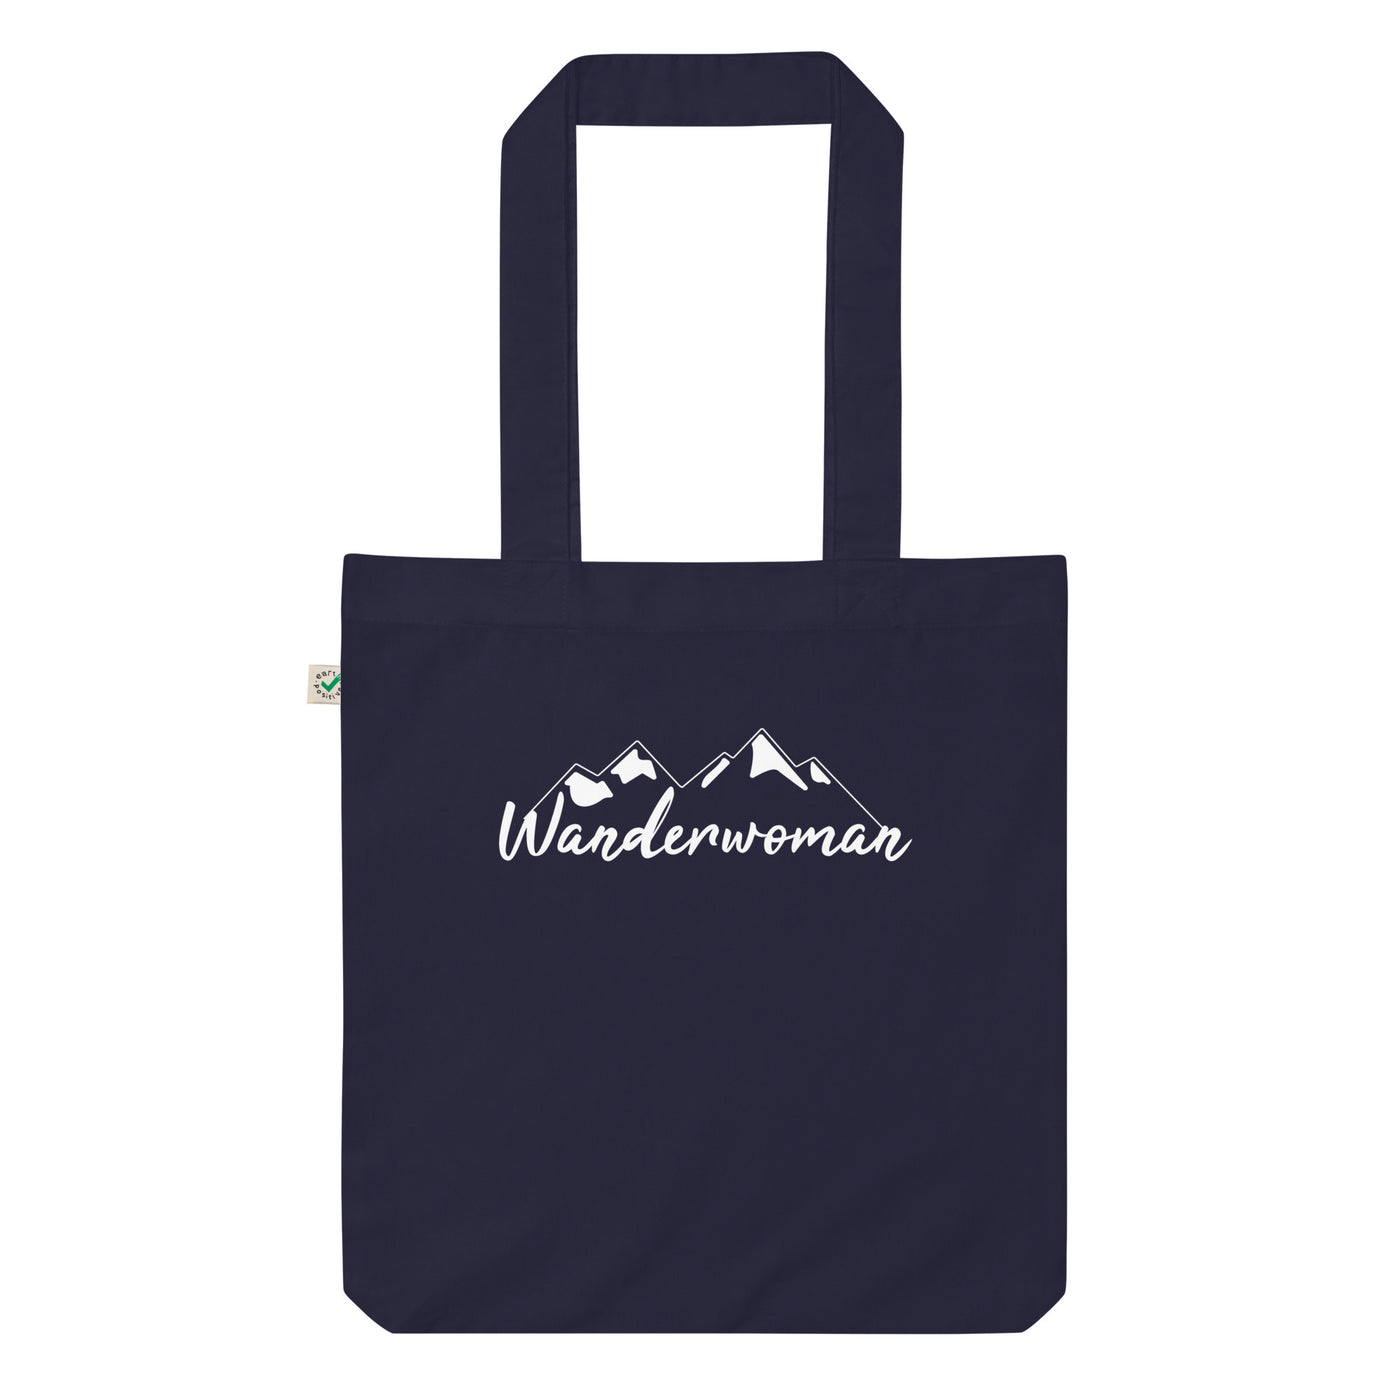 Wanderwoman. - Organic Einkaufstasche wandern Navy